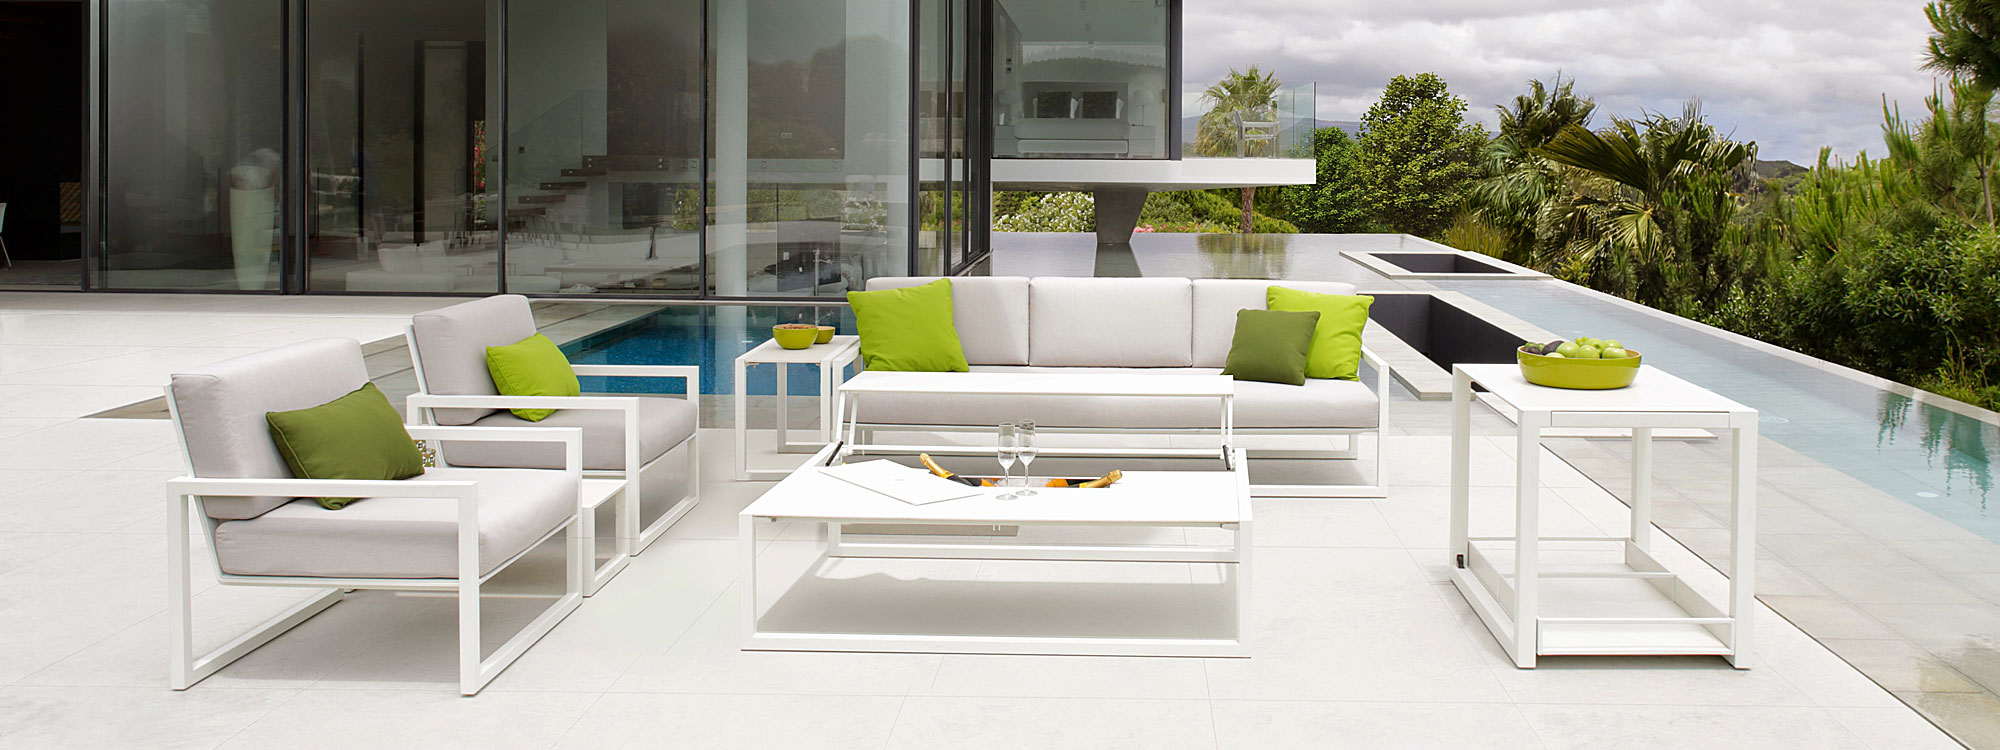 White Ninix garden sofas by Royal Botania